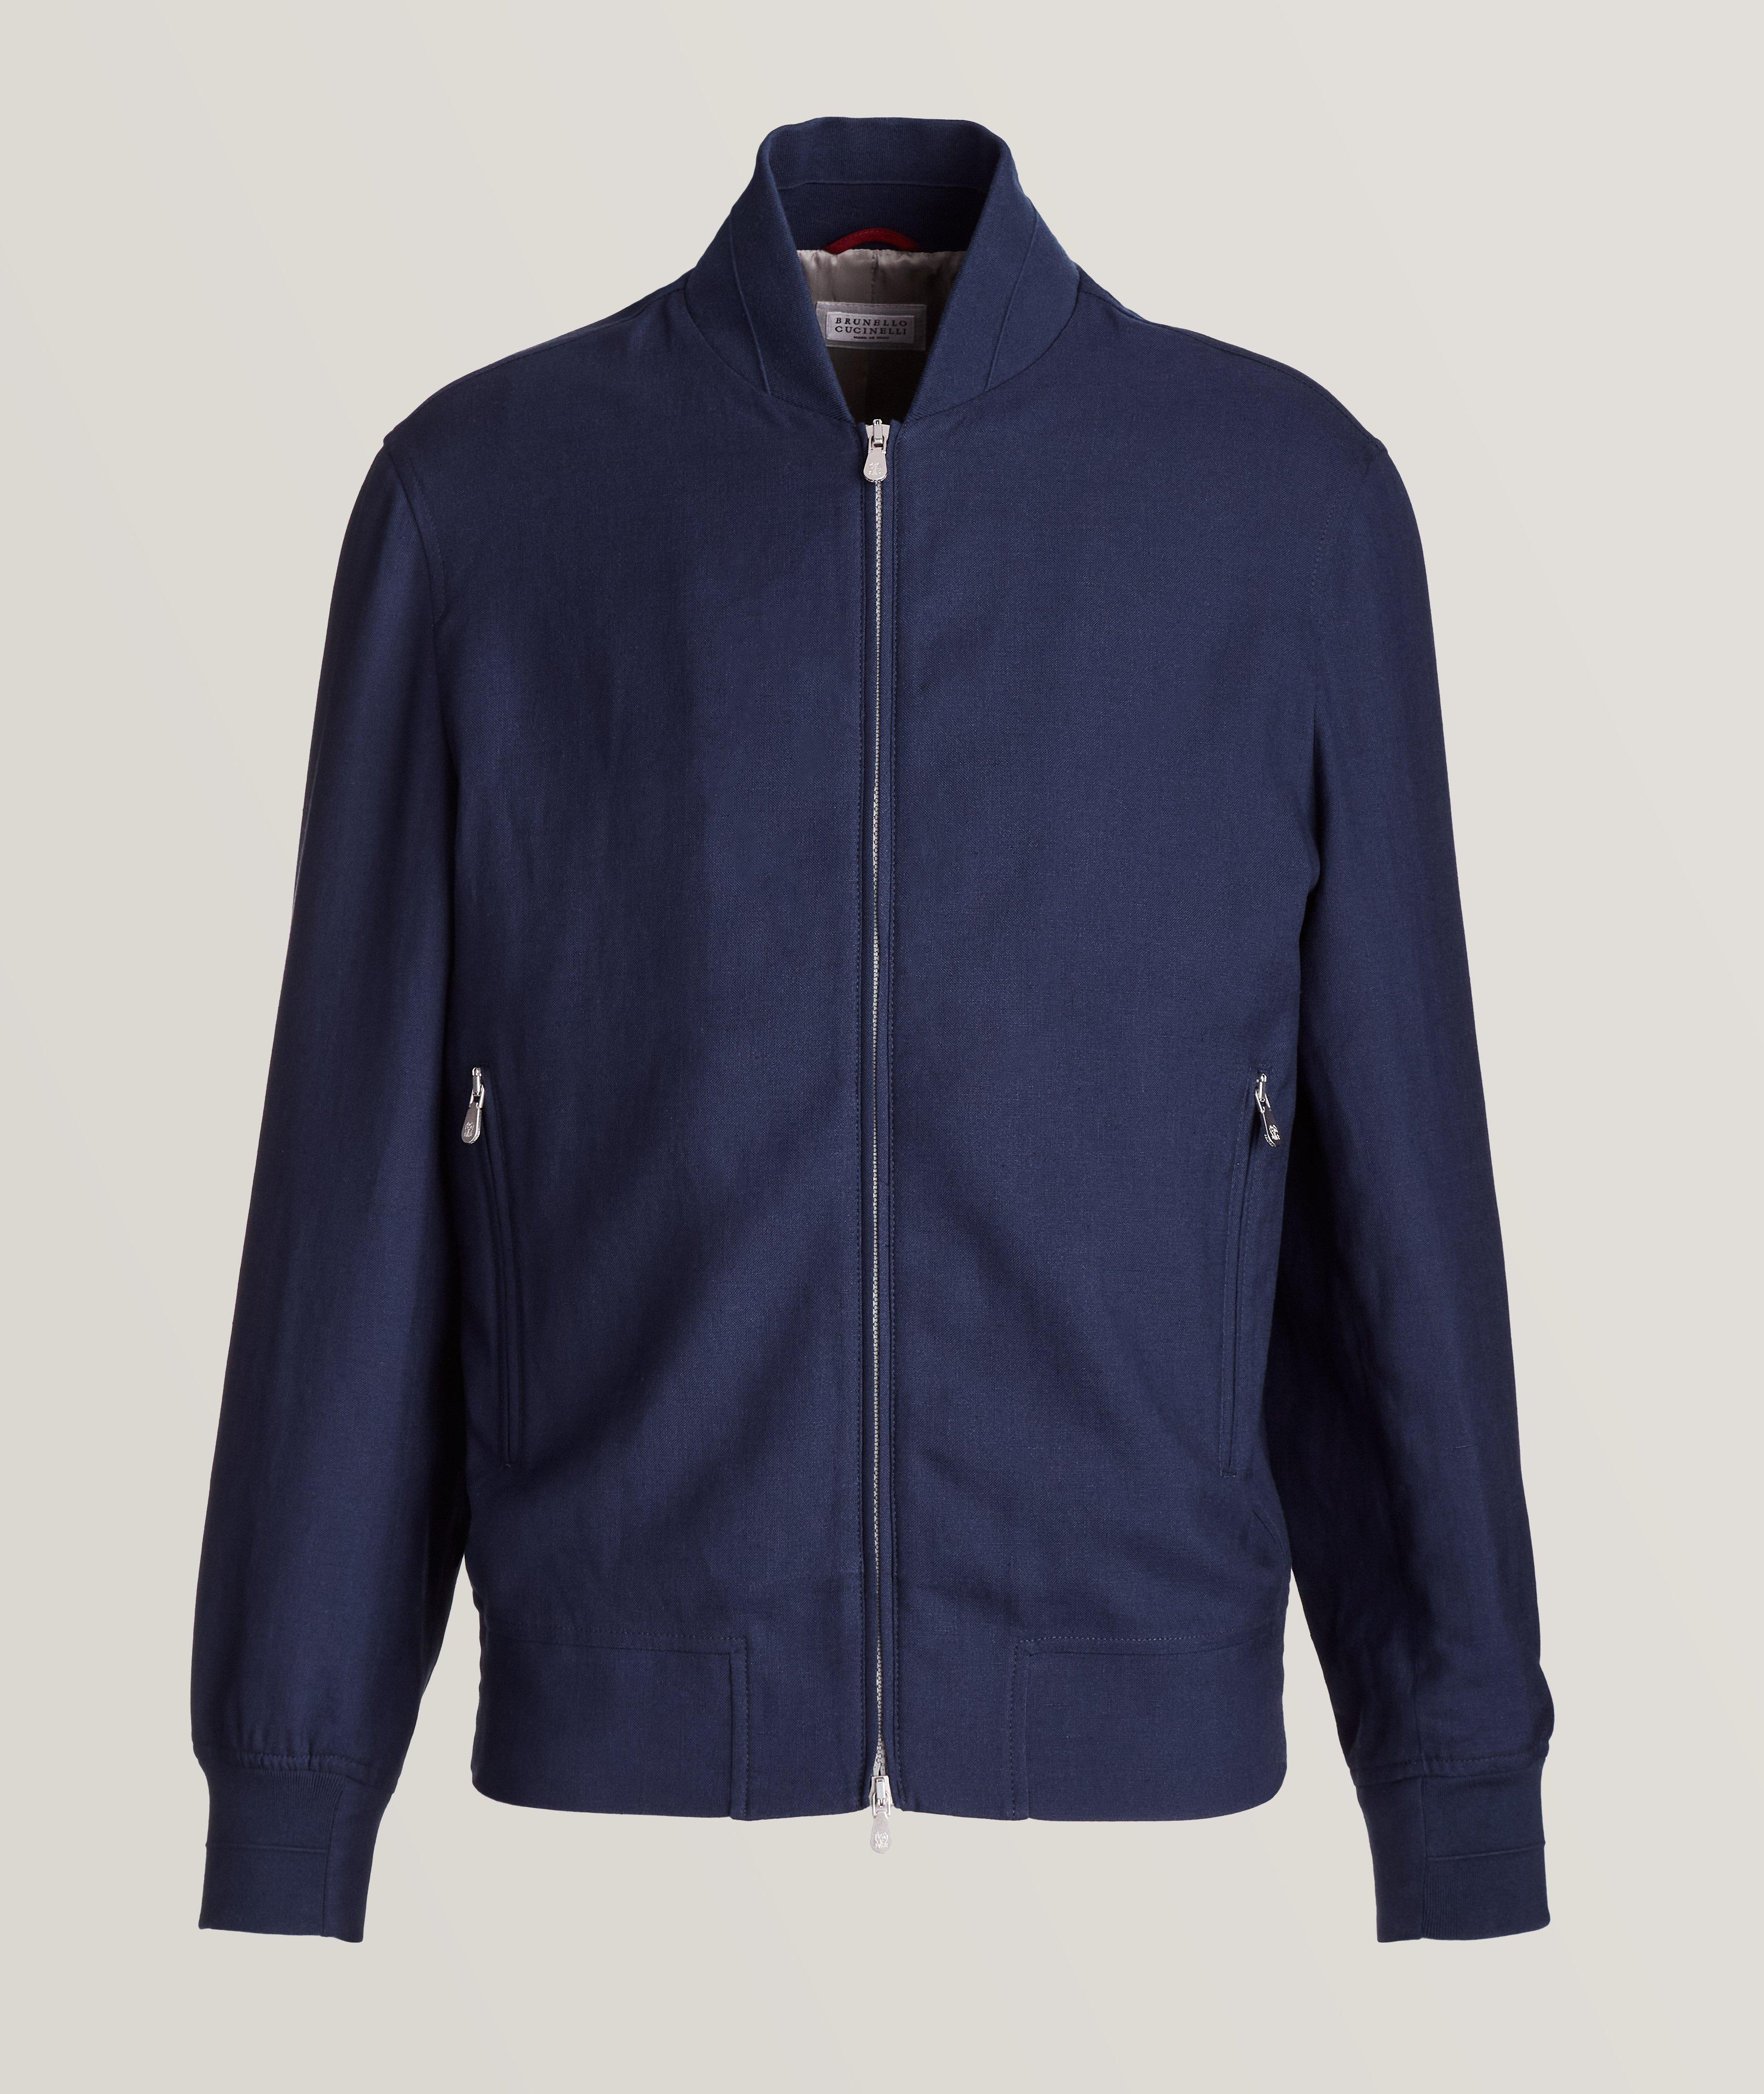 Brunello Cucinelli Two-Way Linen-Wool Zip Up Bomber Jacket | Coats ...